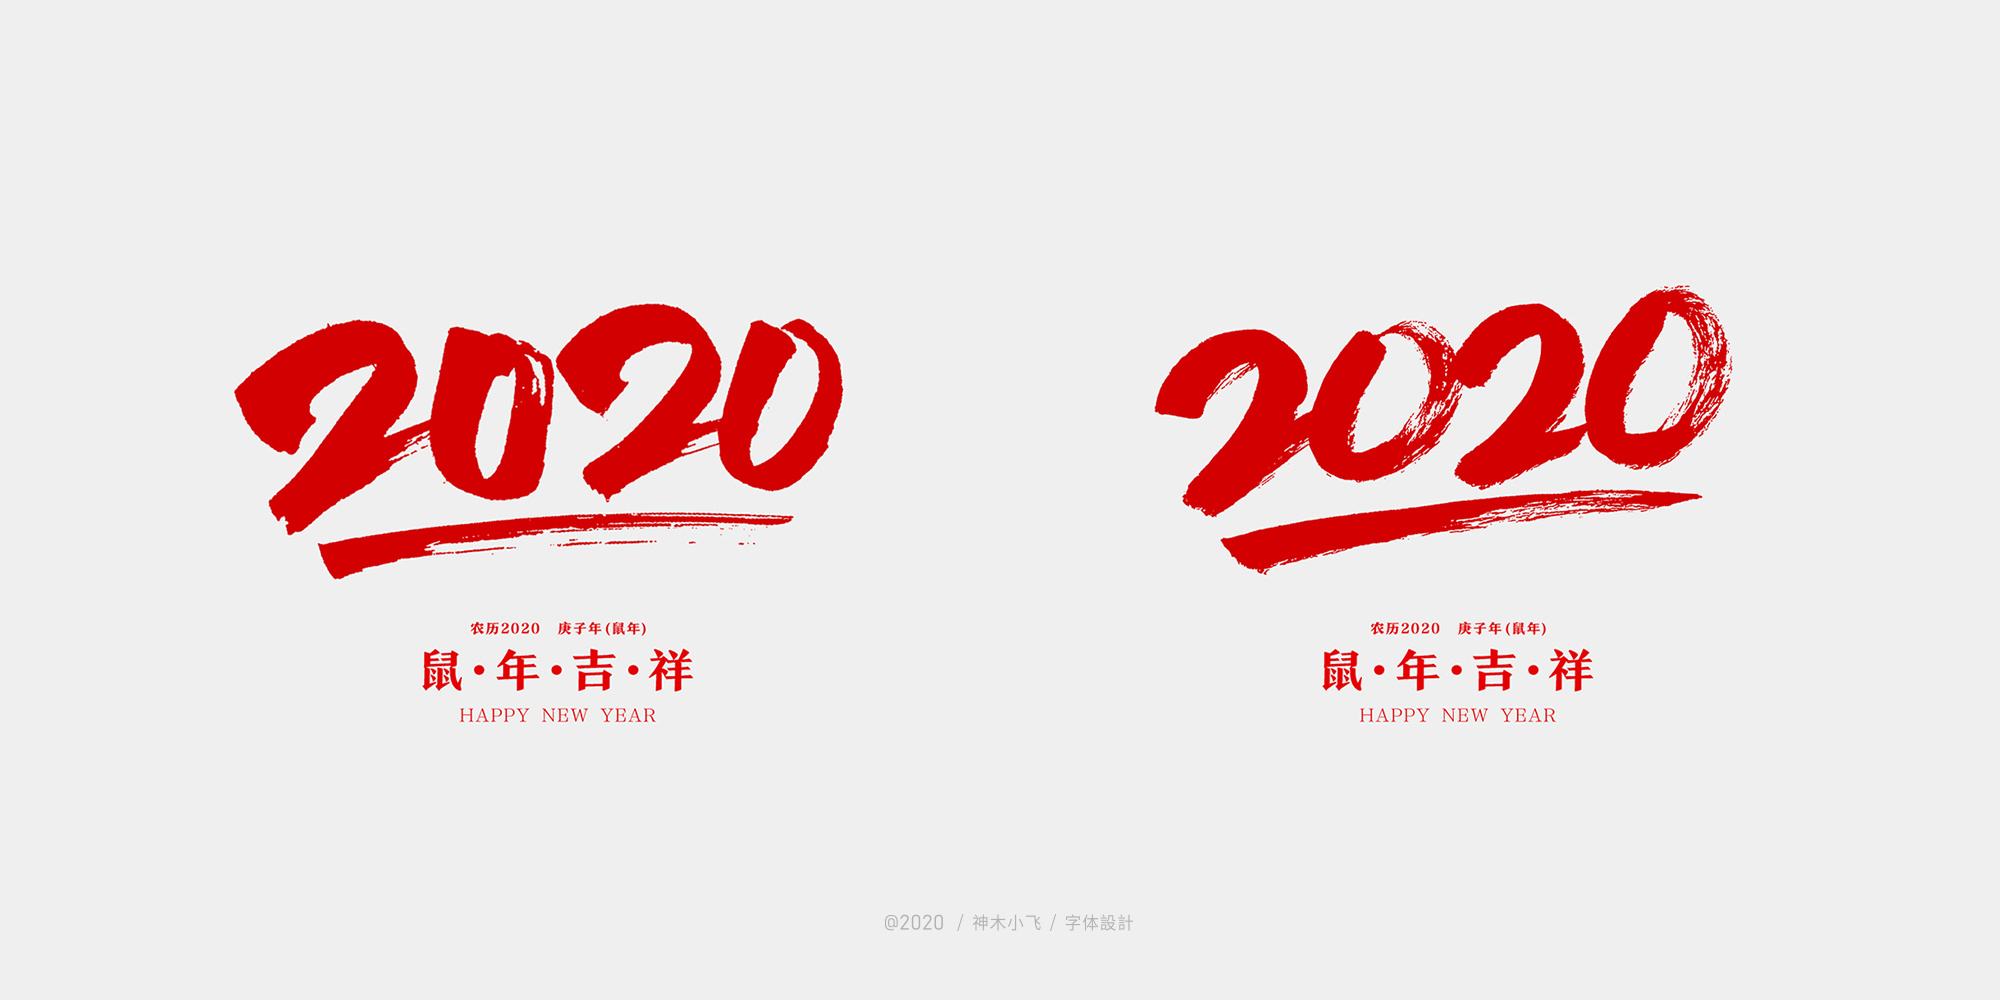 "福"字"2020"字体设计大合集,免费商用!